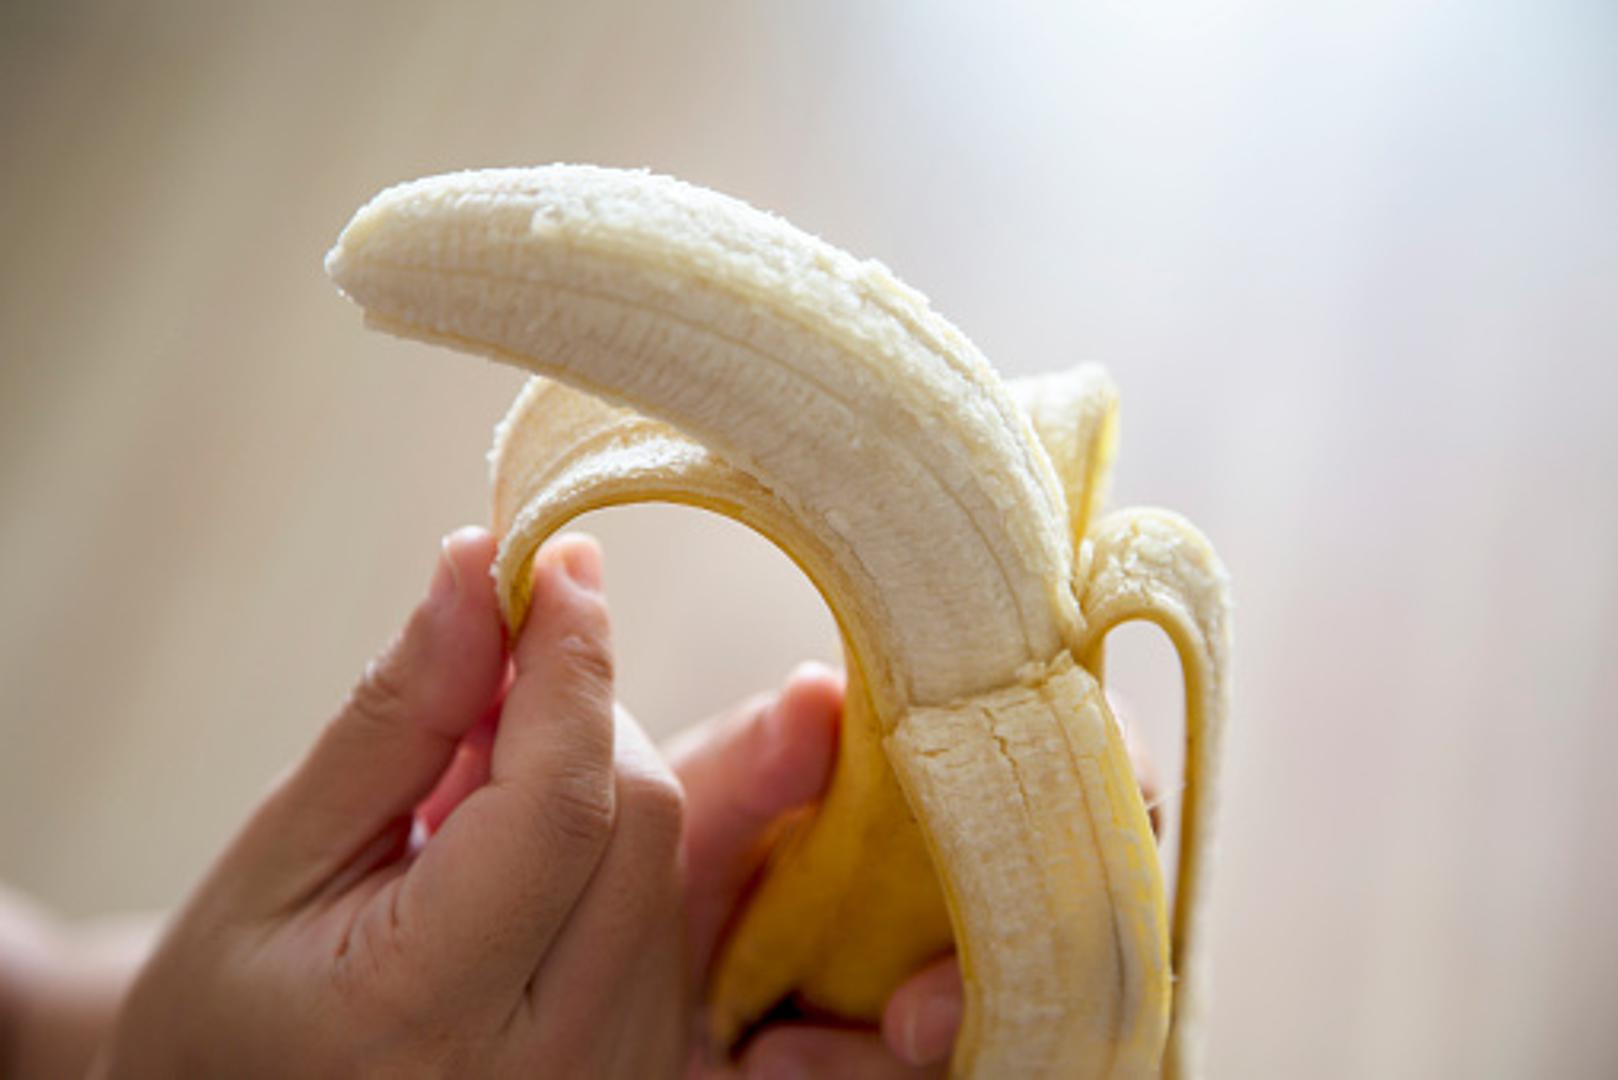 Banane - Mnogi izbjegavaju banane kada žele smršavjeti, no ne biste trebali. Iako imaju oko 105 kalorija, sadrže i tri grama vlakana što ih čini dobrim odabirom za mršavljenje. 